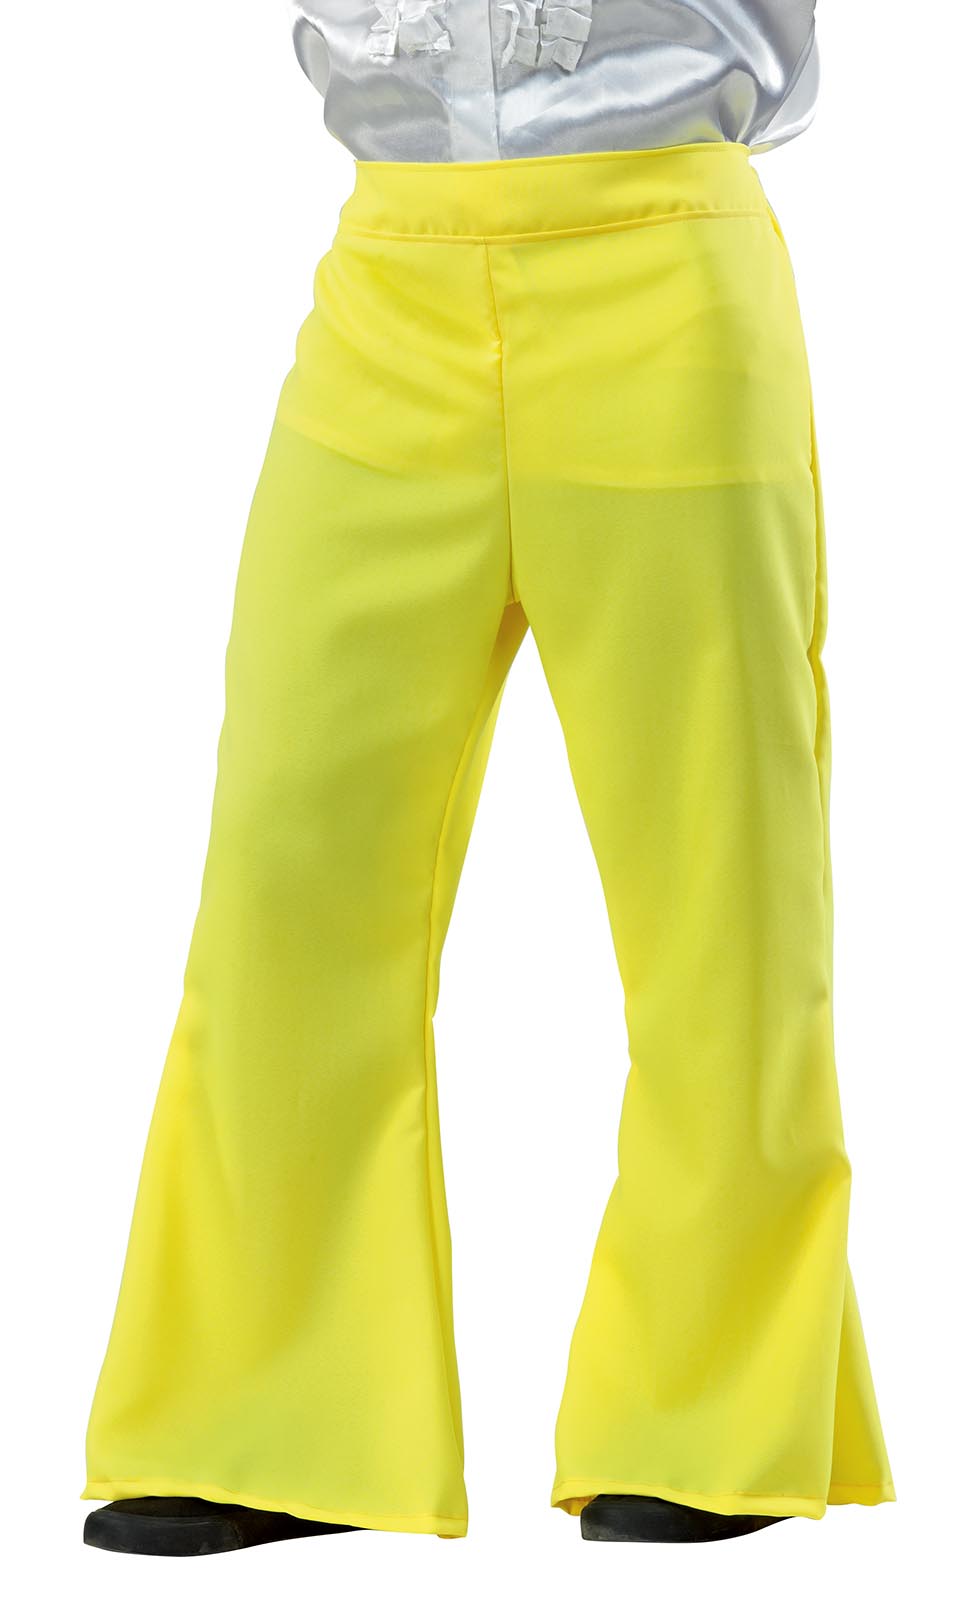 Αποκριάτικη στολή DISCO παντελόνι (κίτρινο) FF716